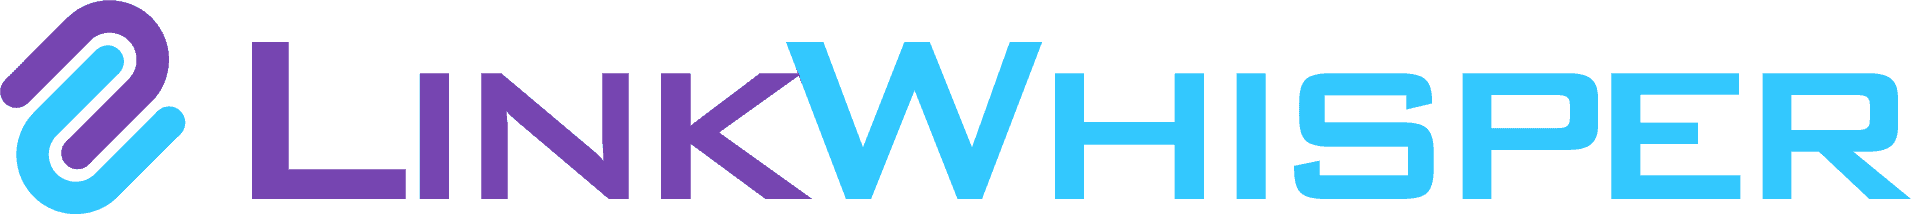 linkwhisper logo